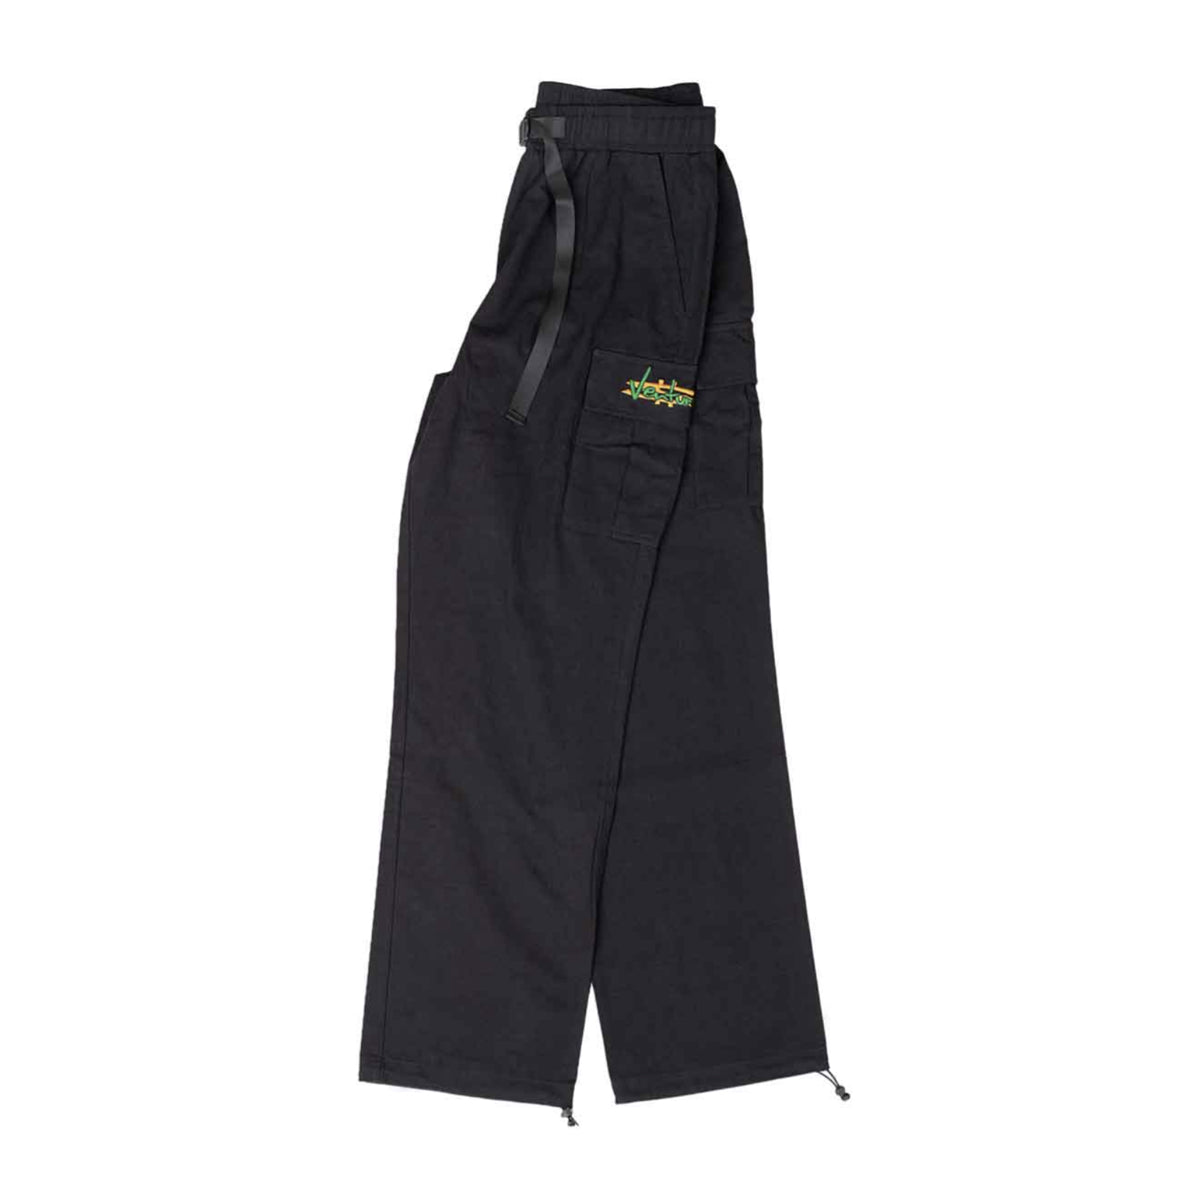 Venture Paid Cargo Pants (Black) - Apple Valley Emporium